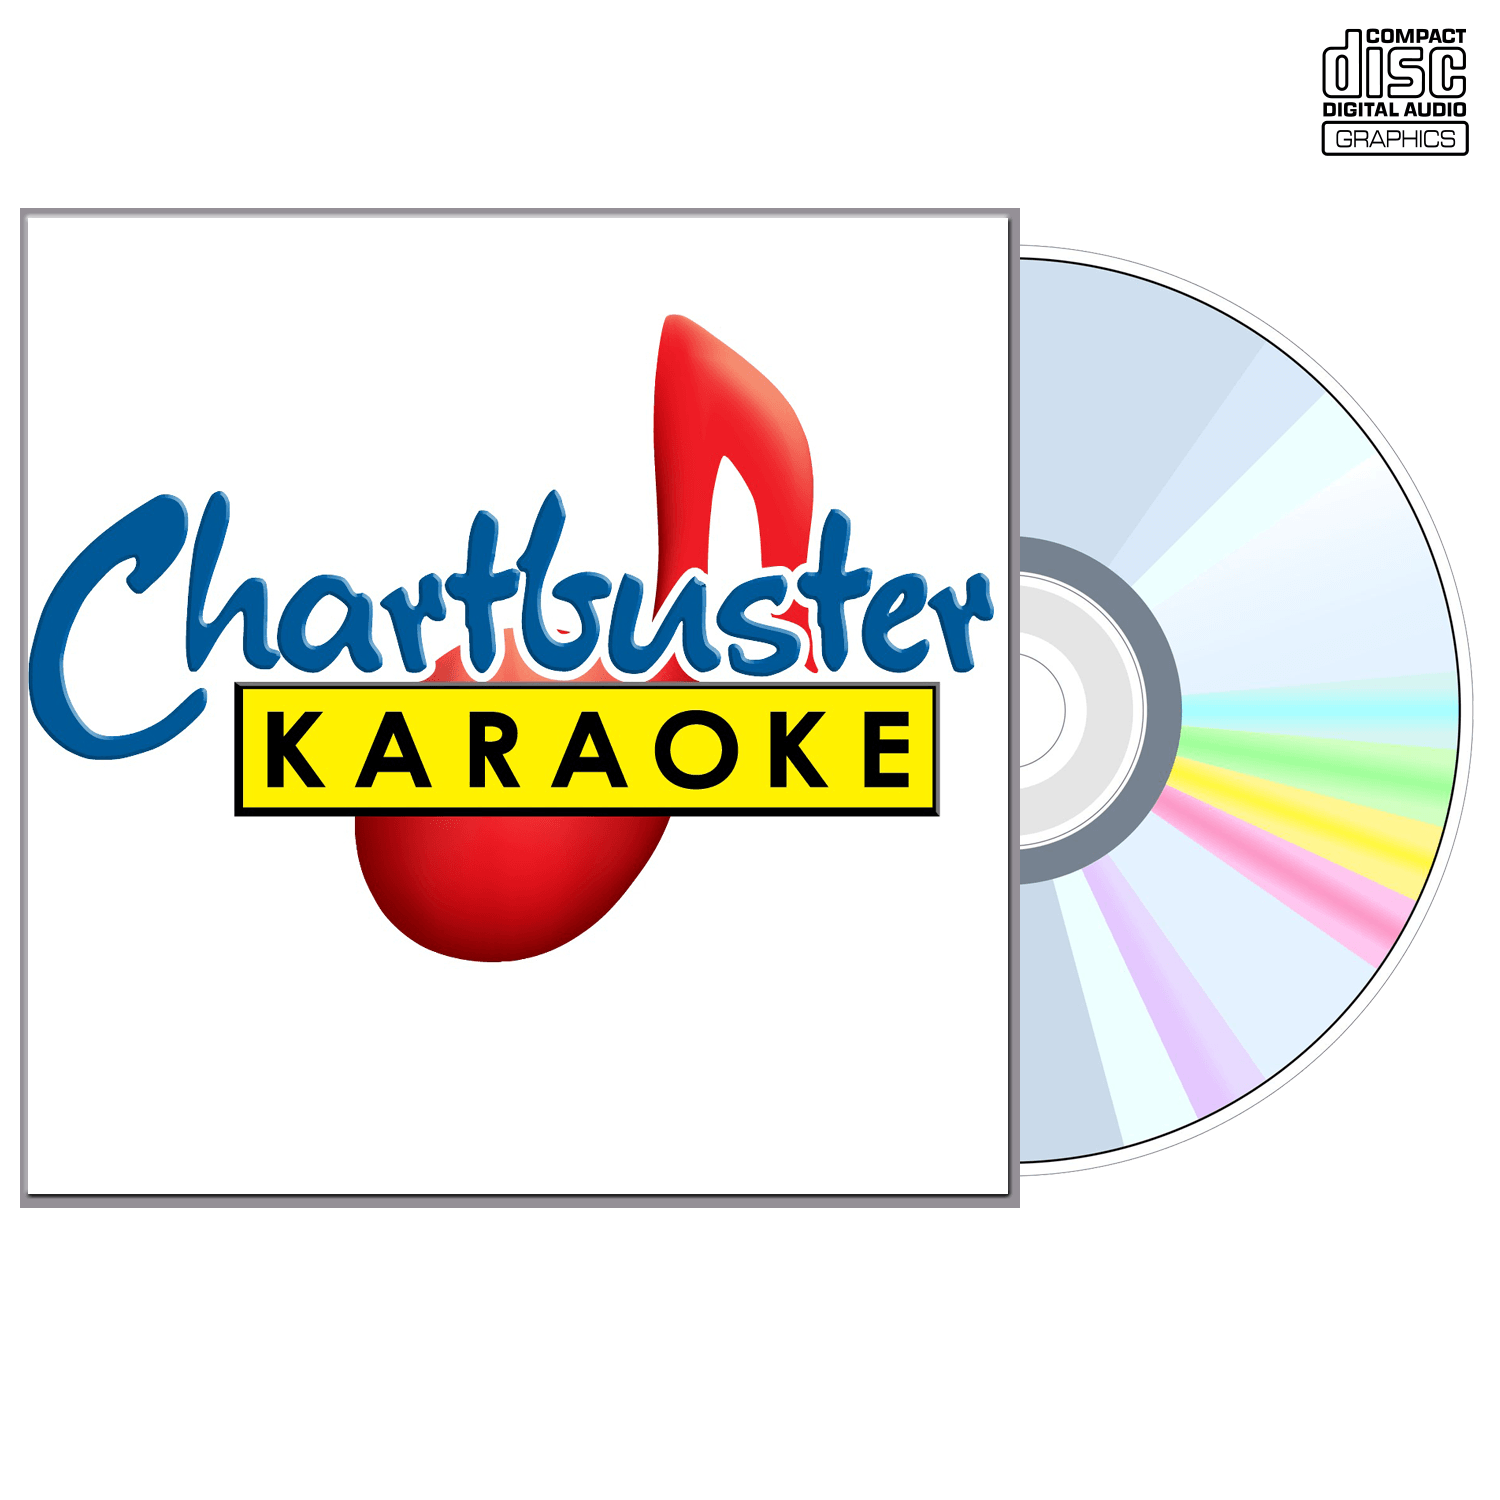 Steve Winwood - CD+G - Chartbuster Karaoke - Karaoke Home Entertainment